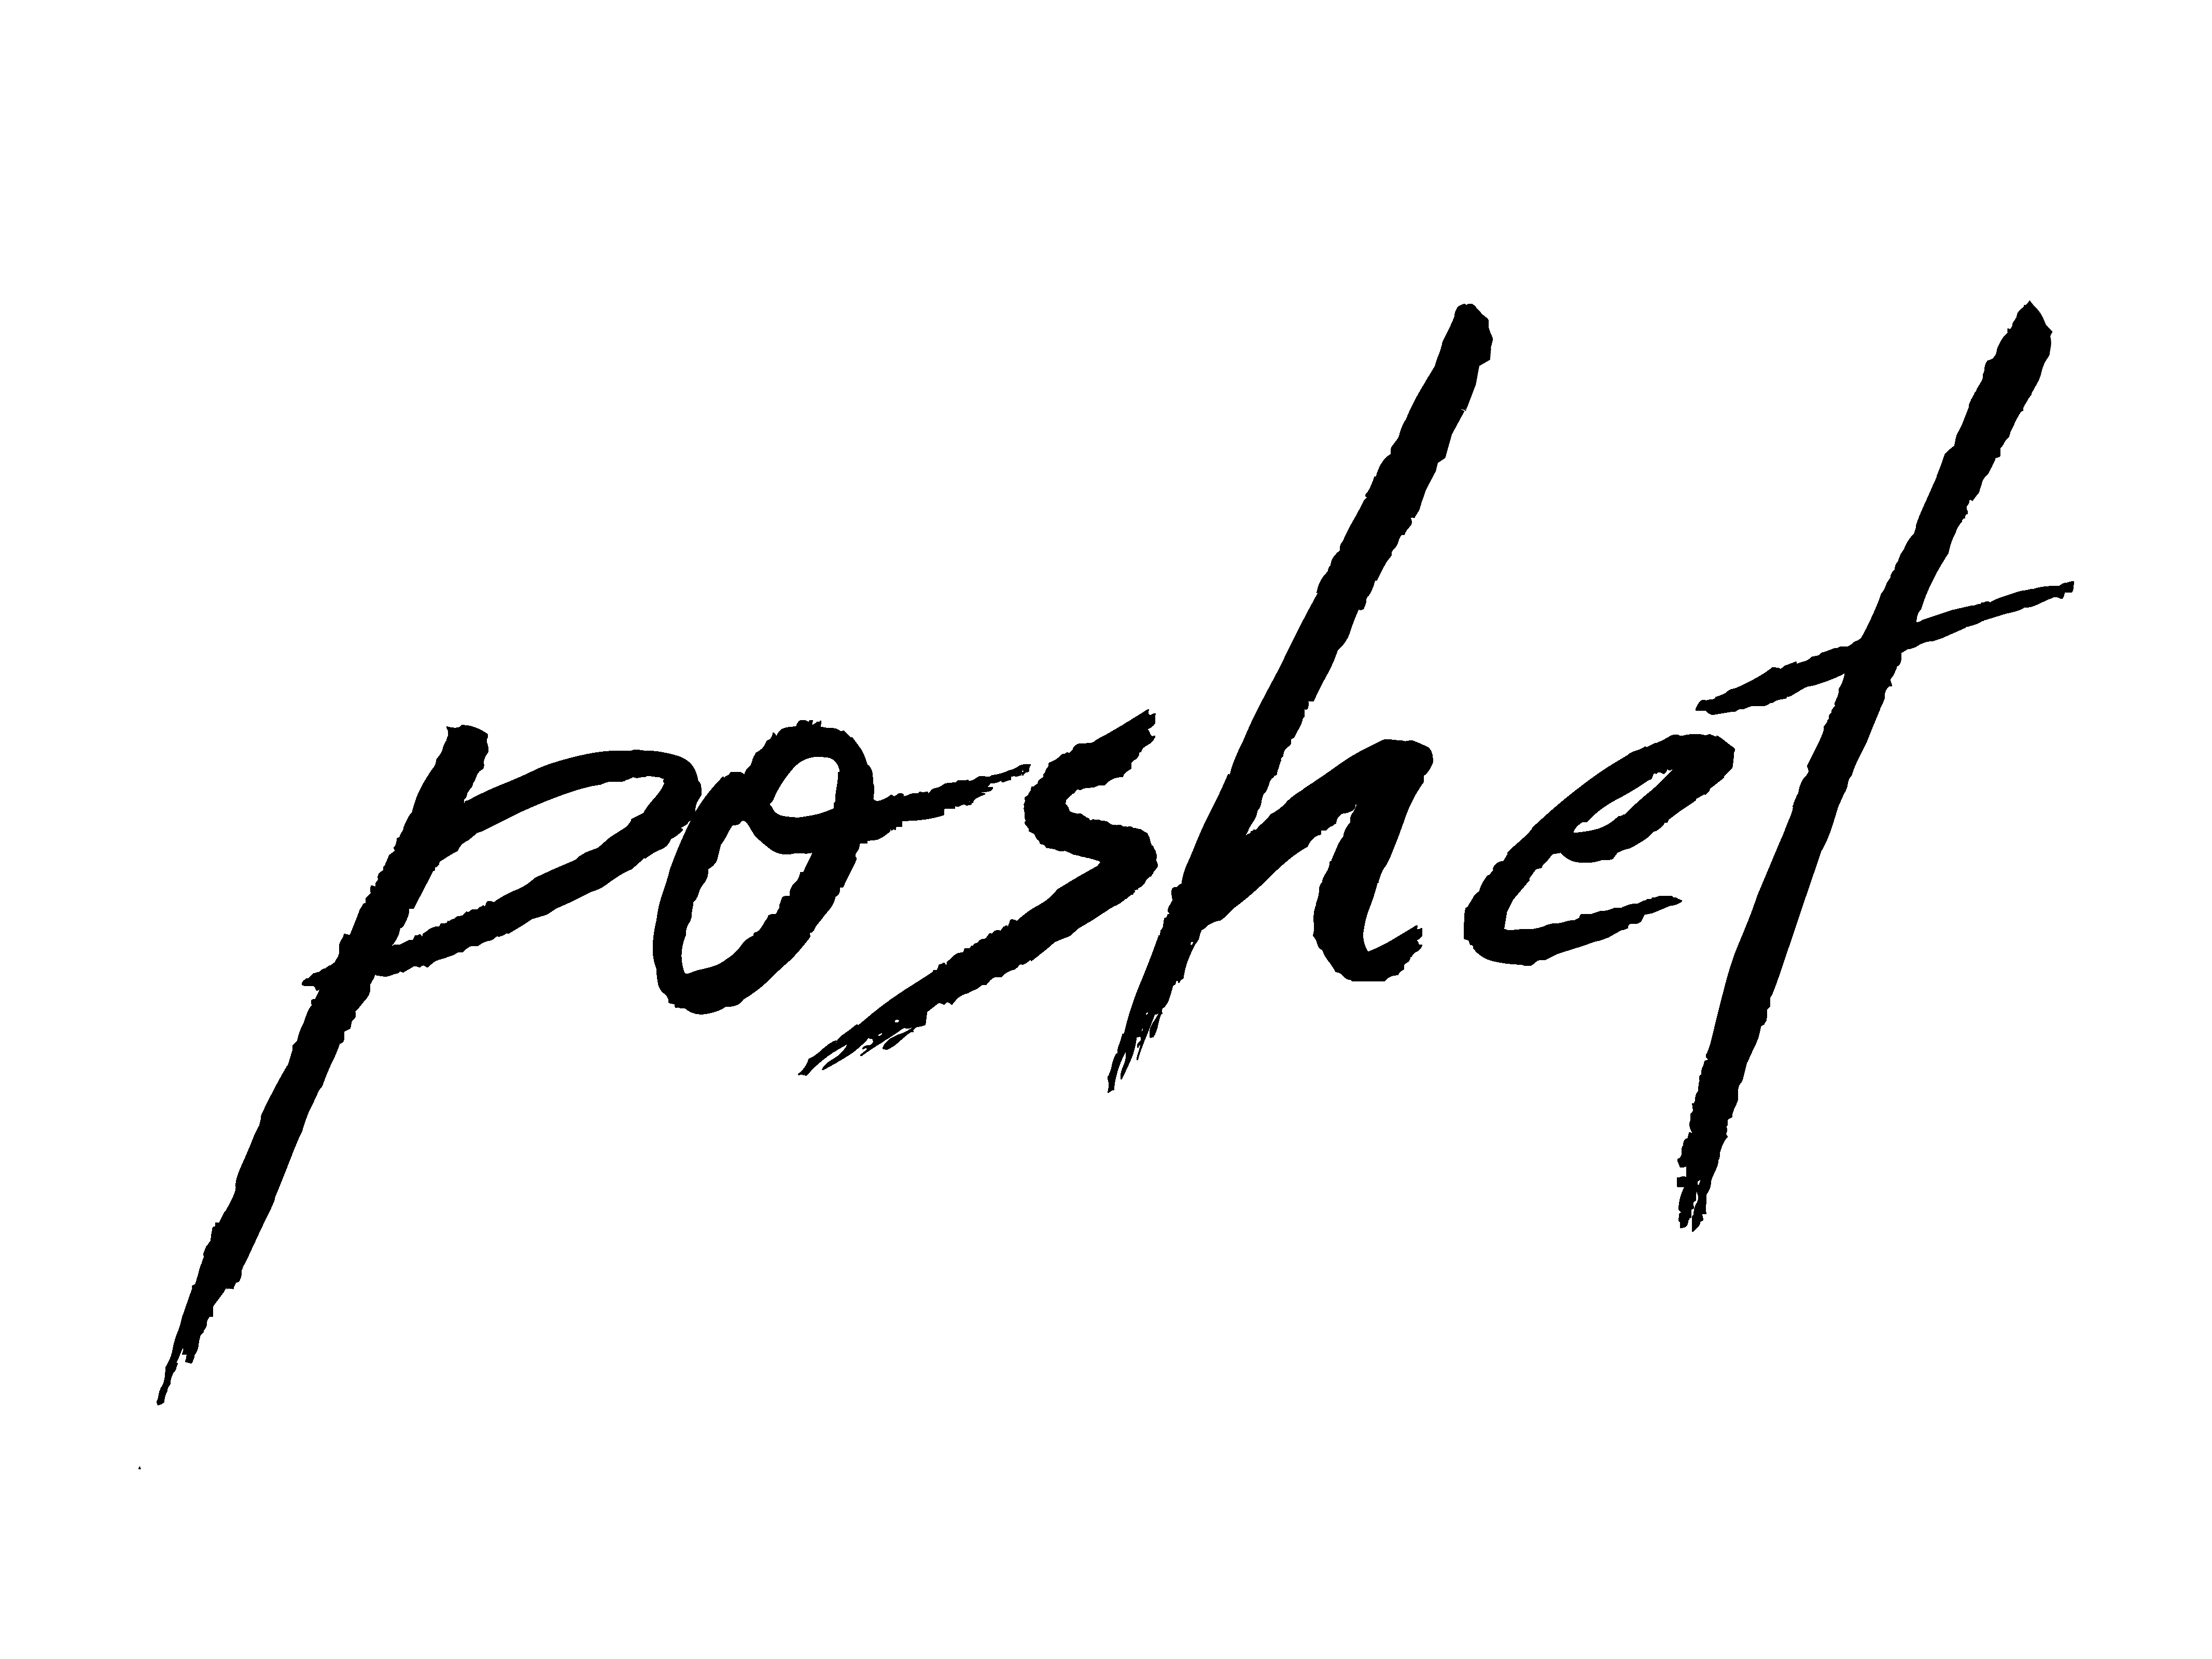 Poshet